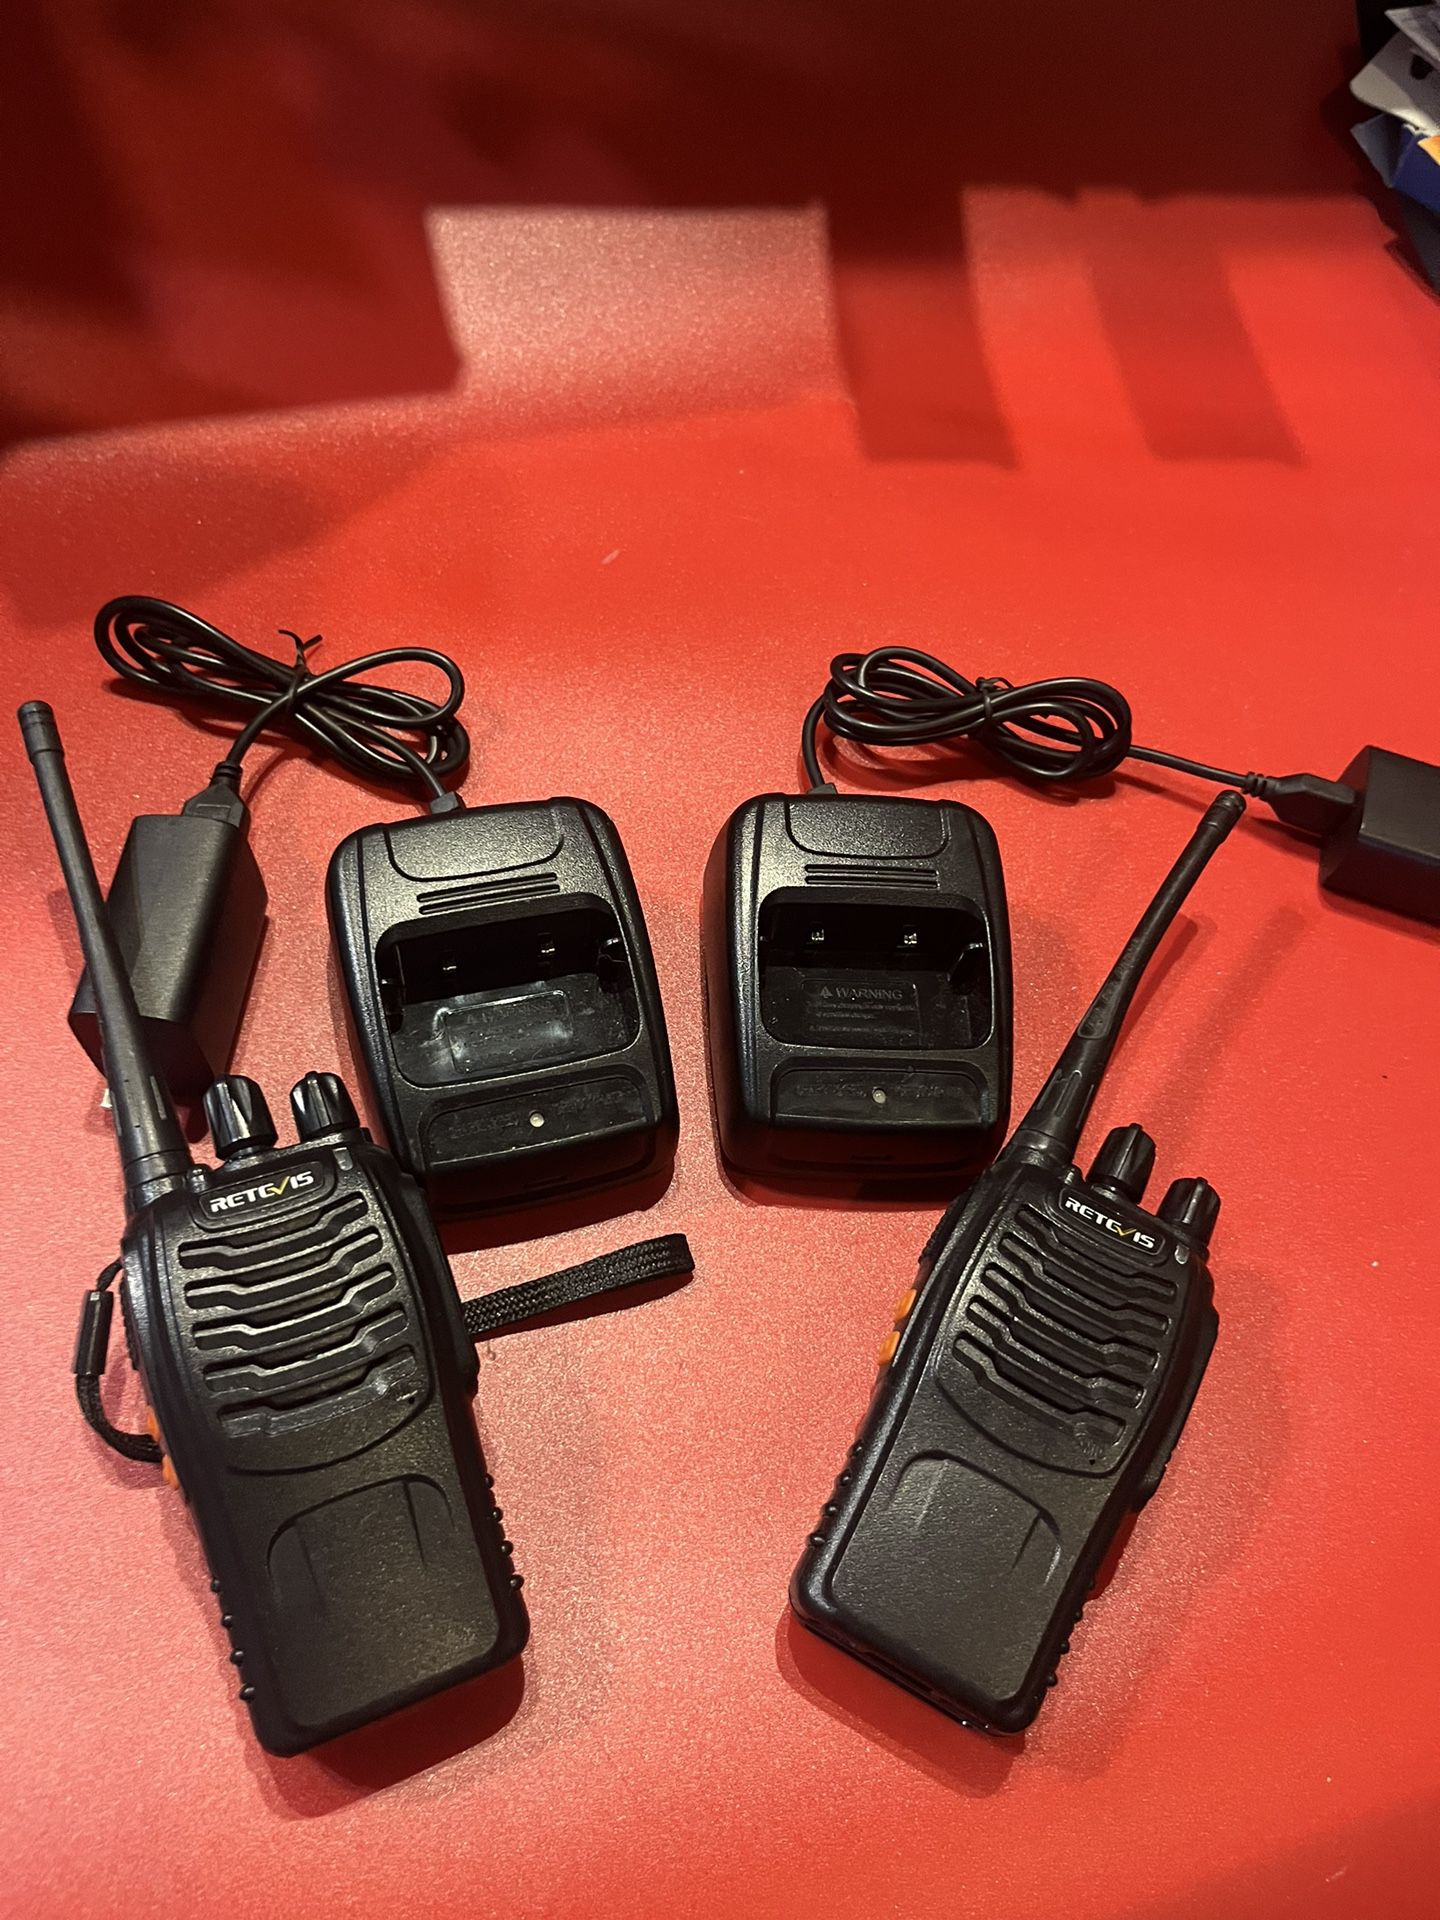 Lot of 2 Retevis H777 UHF 3W 16ch Walkie-talkies  Like new perfect.